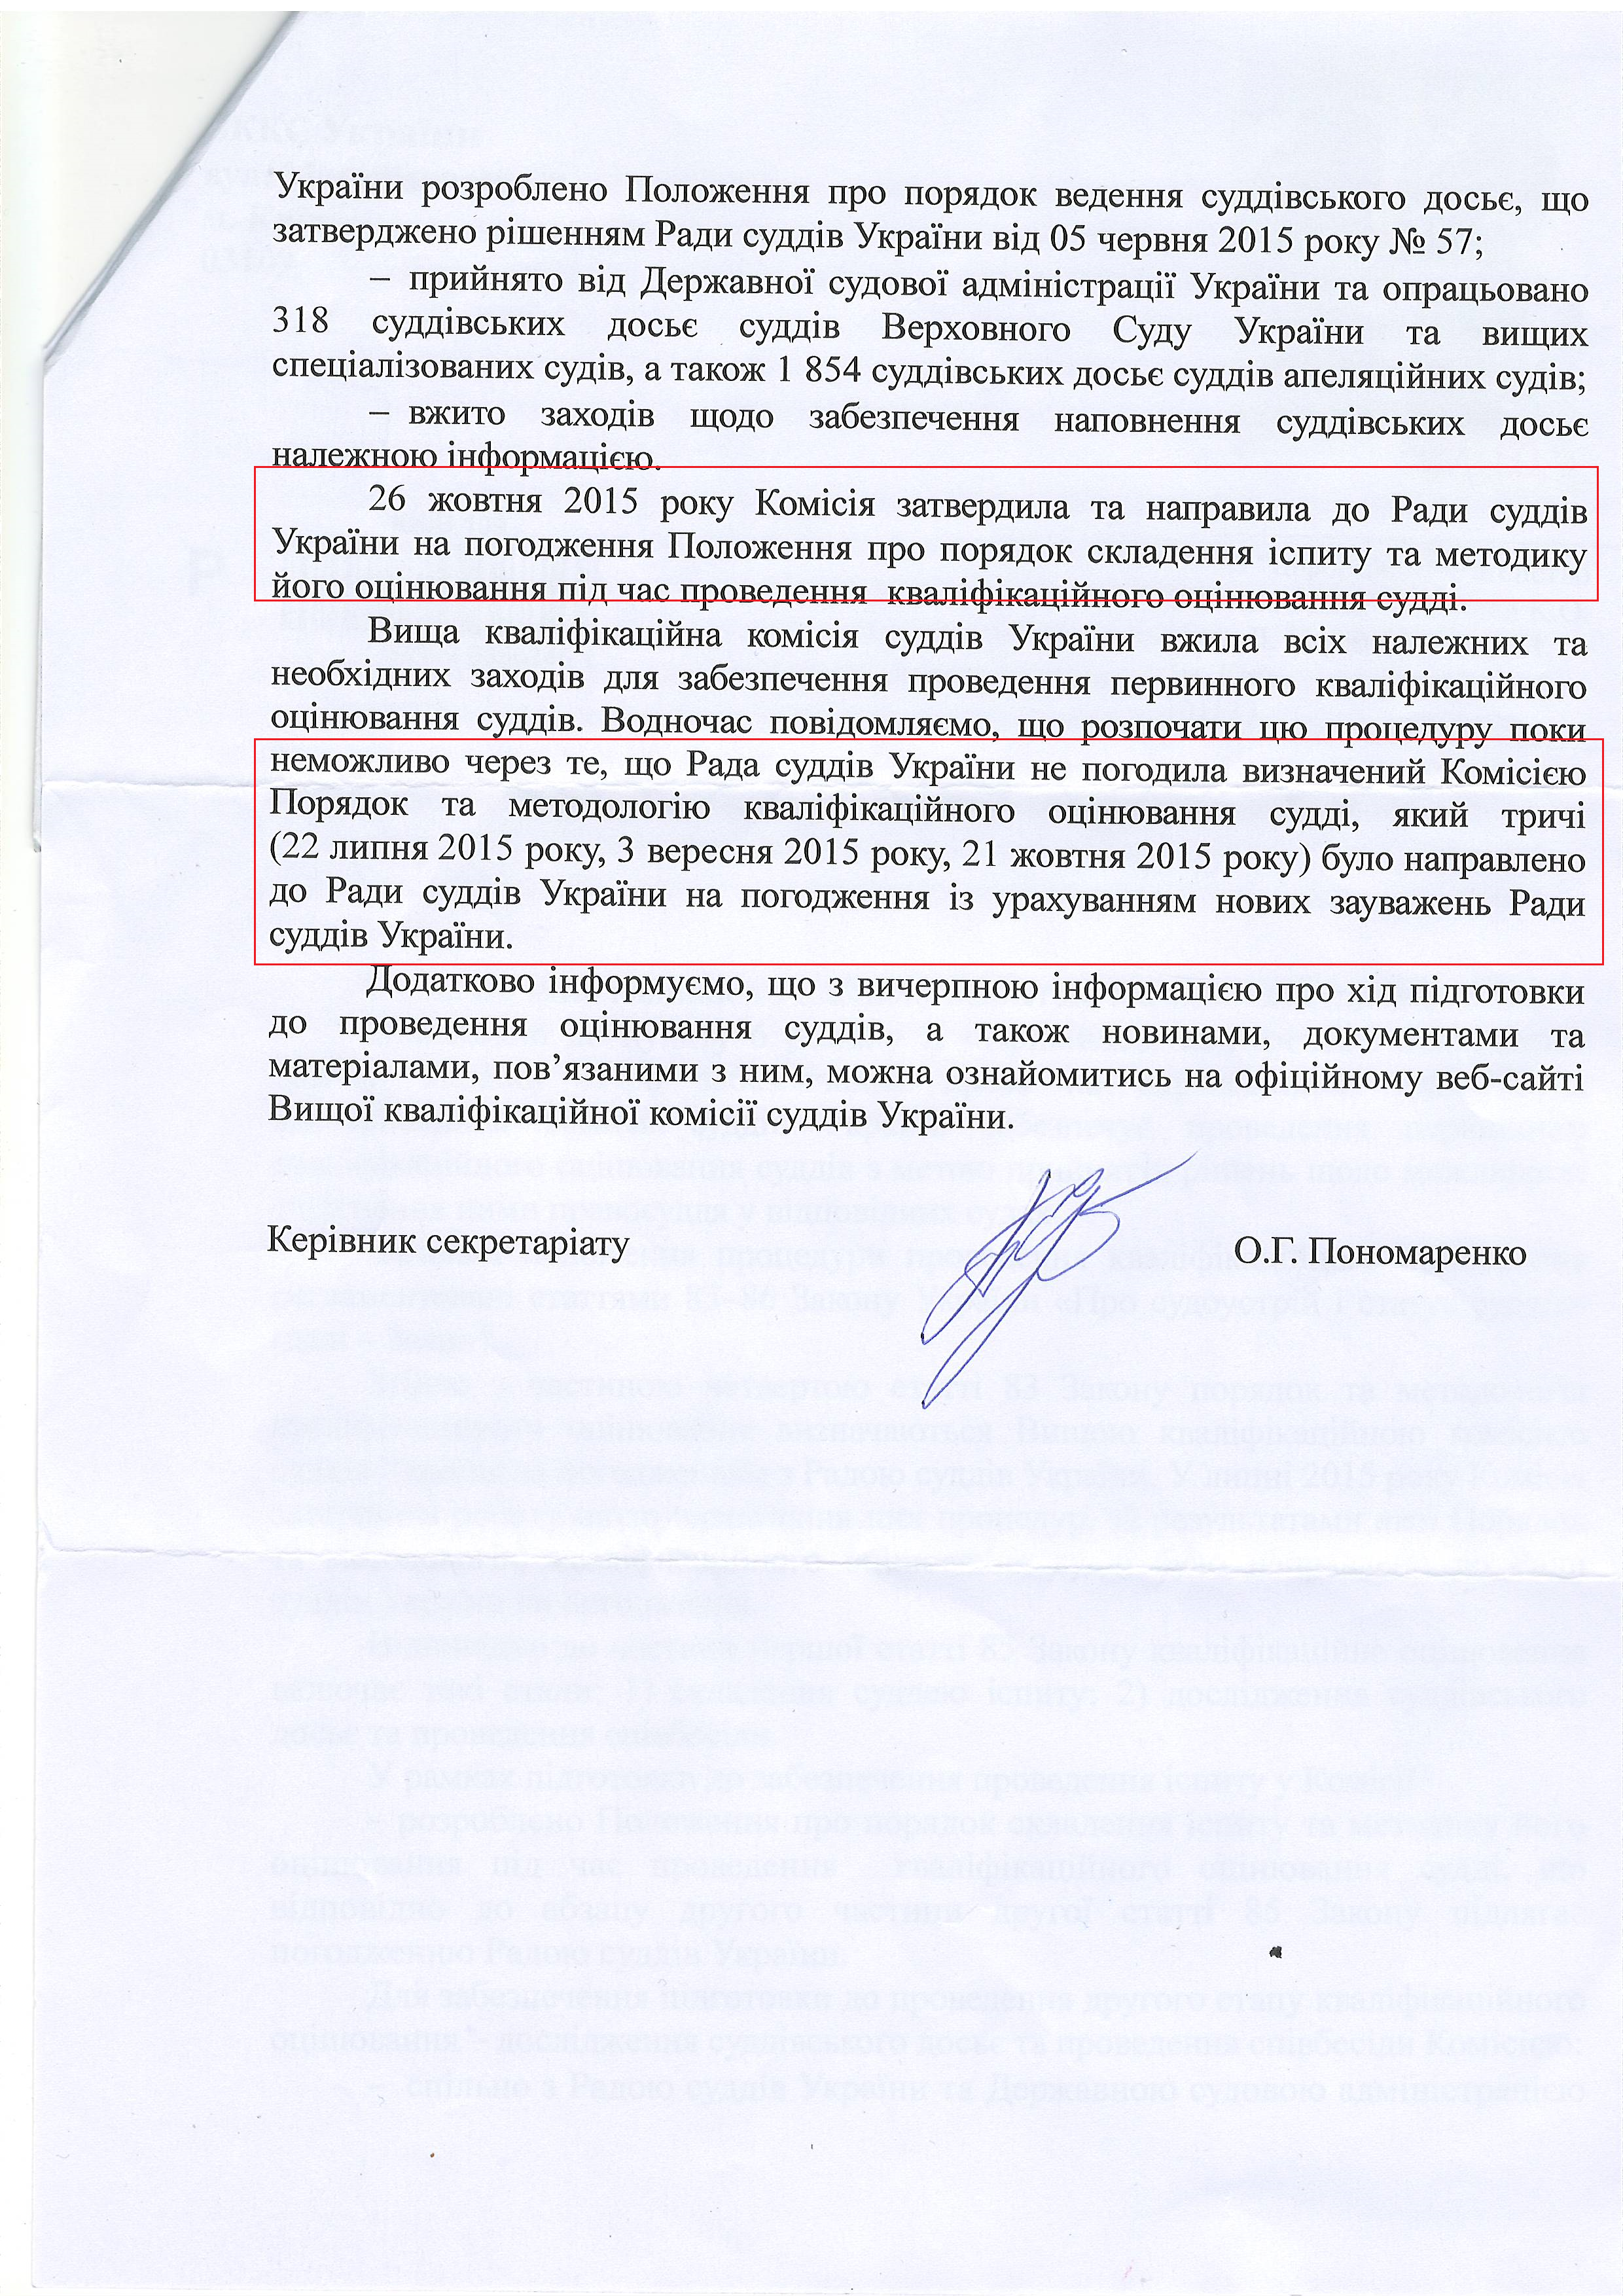 Лист Вищої кваліфікаційною комісії суддів України від 9 листопада 2015 року